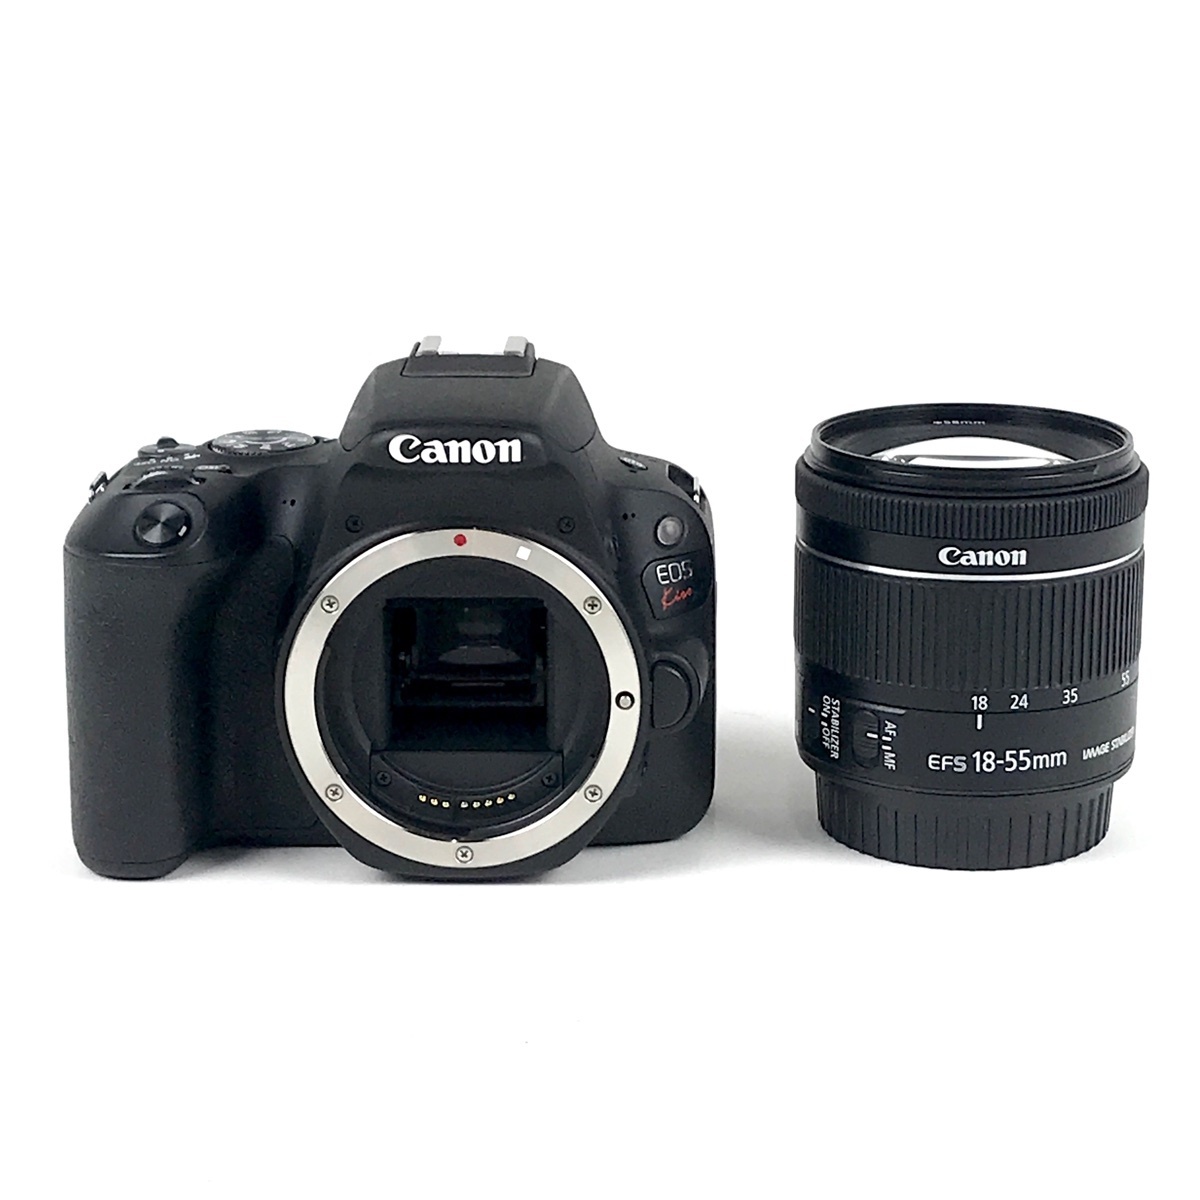 41％割引通販 キヤノン Canon EOS Kiss X9i EF-S 18-135mm 高倍率 レンズセット 手振れ補正 デジタル一眼レフ カメラ  中古 デジタル一眼 カメラ、光学機器 家電、AV、カメラ-MIRMOHAMMADALI.COM